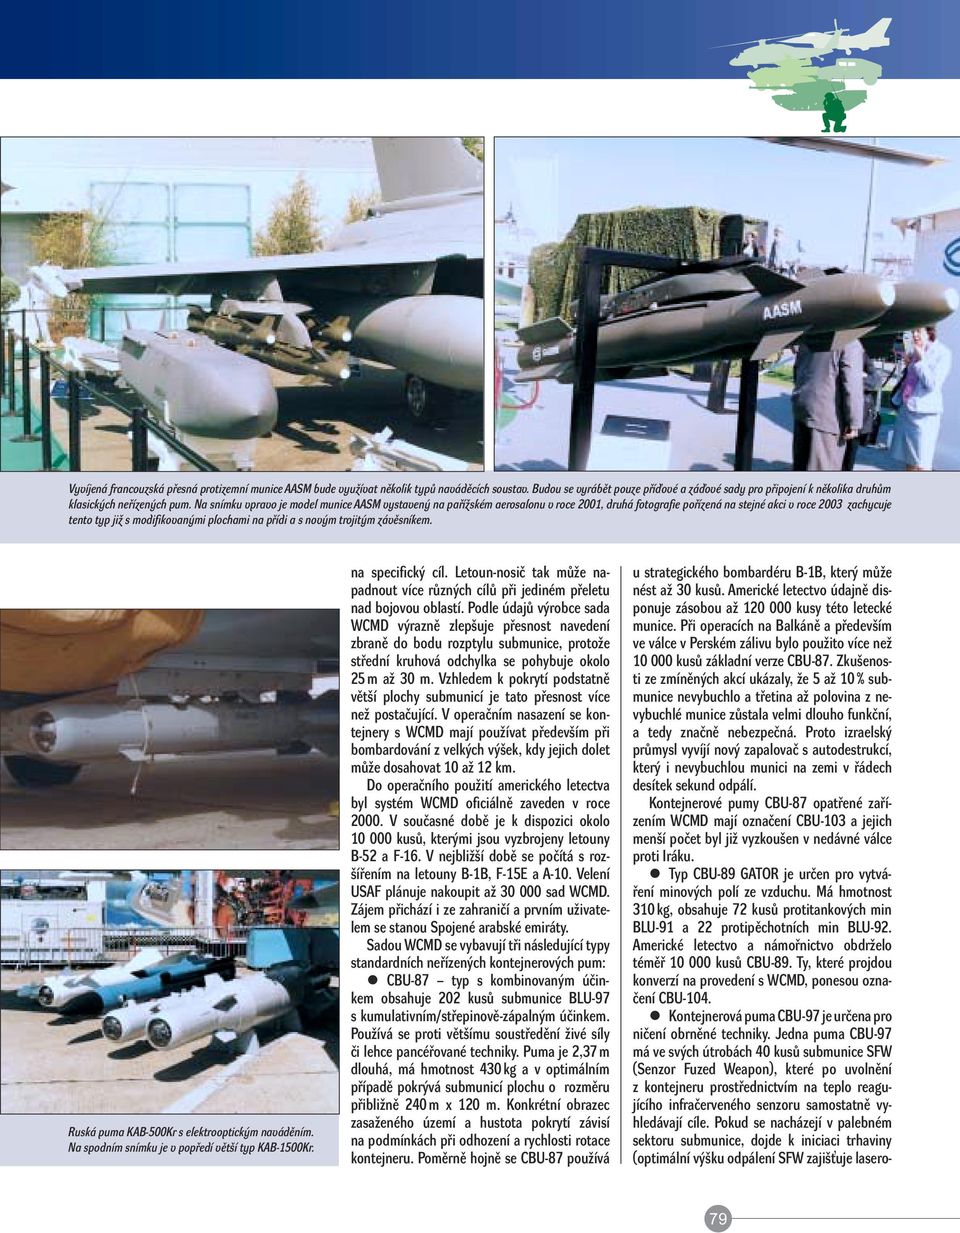 Na snímku vpravo je model munice AASM vystavený na pařížském aerosalonu v roce 2001, druhá fotografie pořízená na stejné akci v roce 2003 zachycuje tento typ již s modifikovanými plochami na přídi a